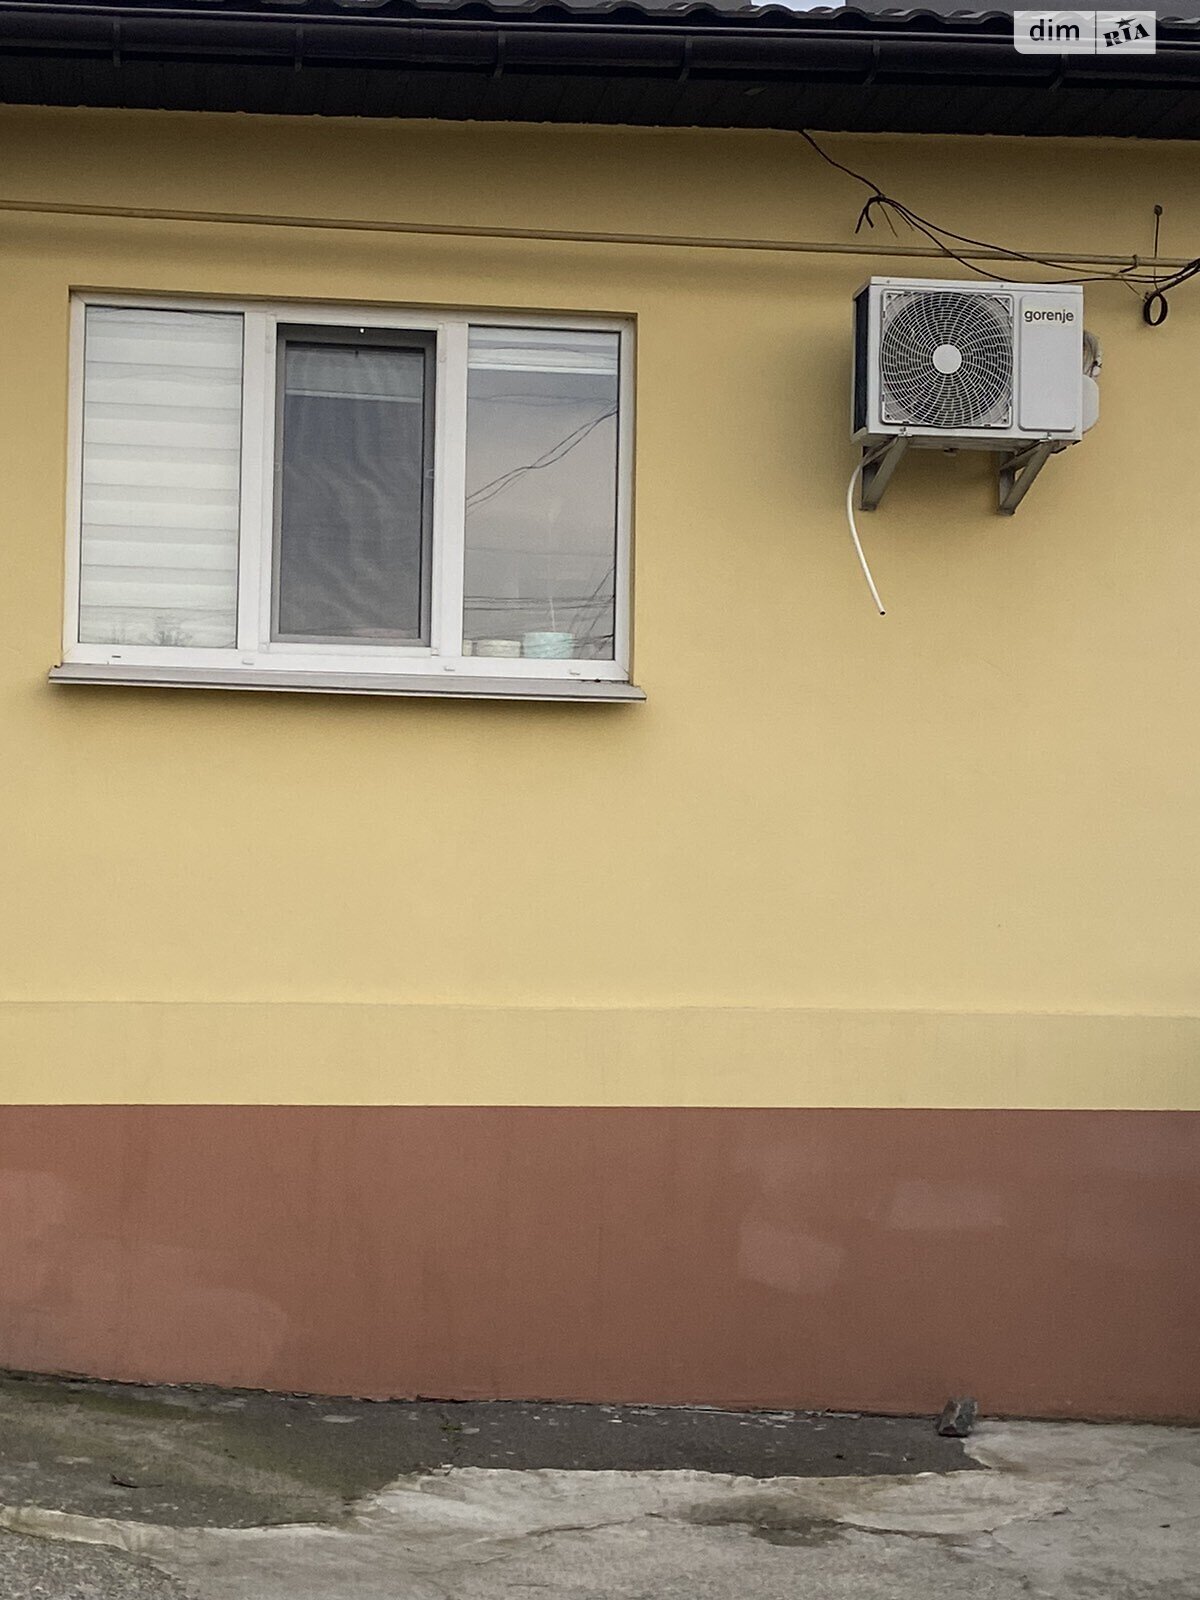 Продажа части дома в Виннице, улица Дубовецкая (Энгельса), район Ближнее замостье, 2 комнаты фото 1